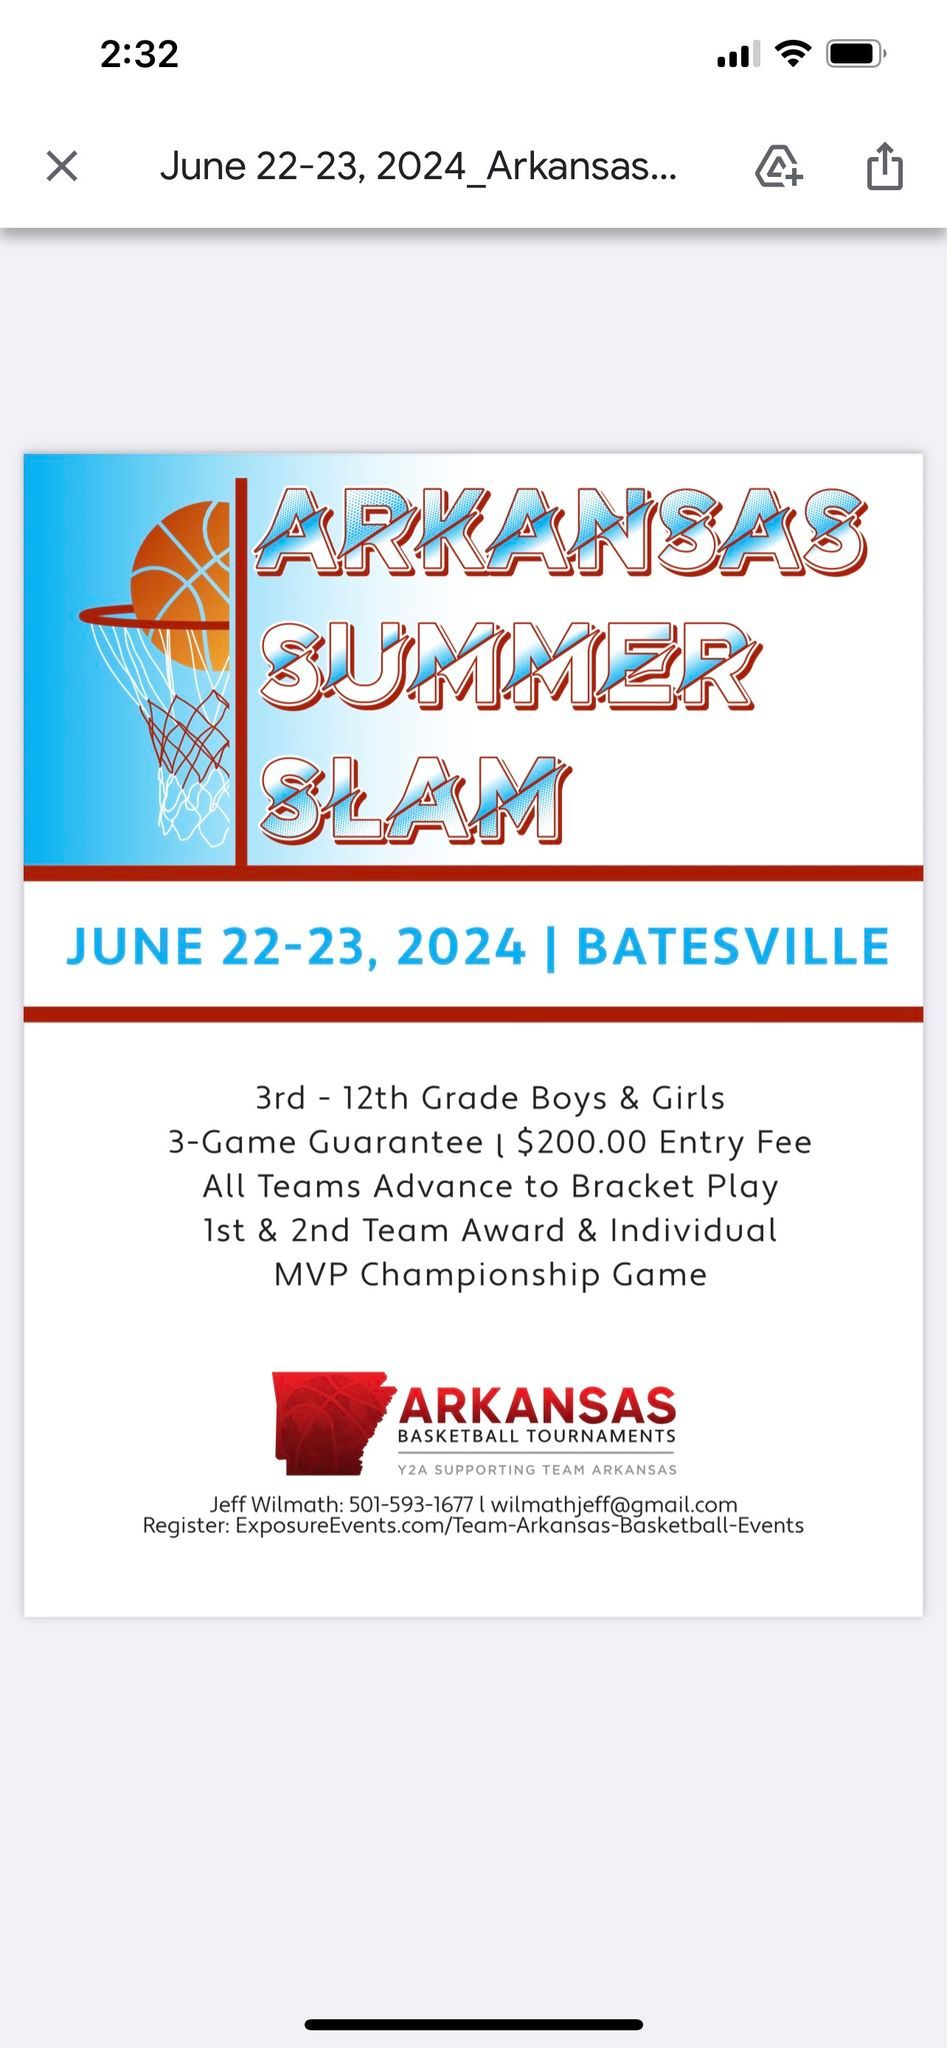 Arkansas Summer Slam 